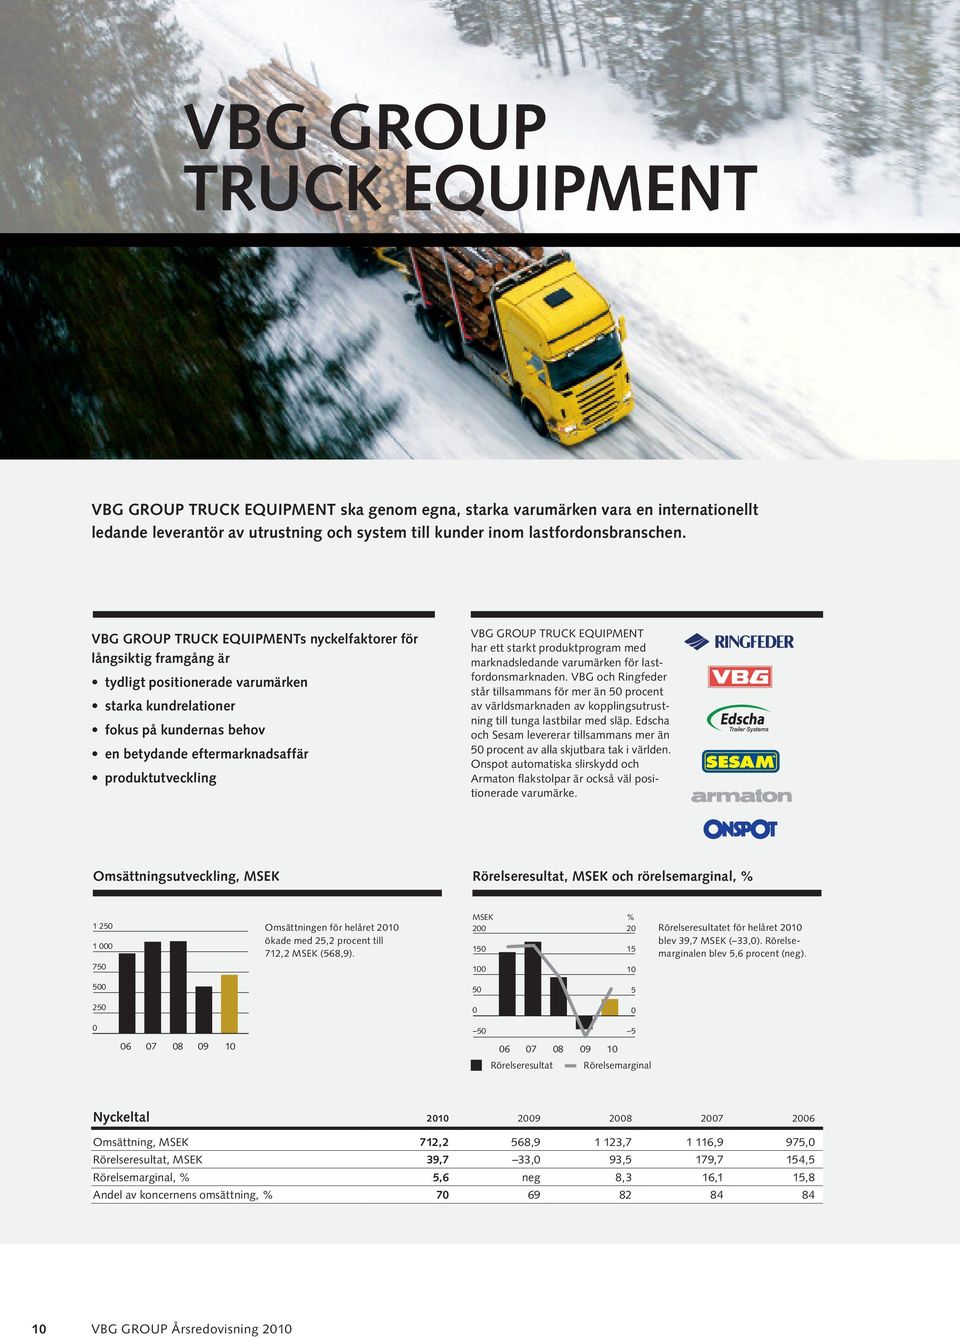 VBG GROUP TRUCK EQUIPMENT har ett starkt produktprogram med marknadsledande varumärken för lastfordonsmarknaden.